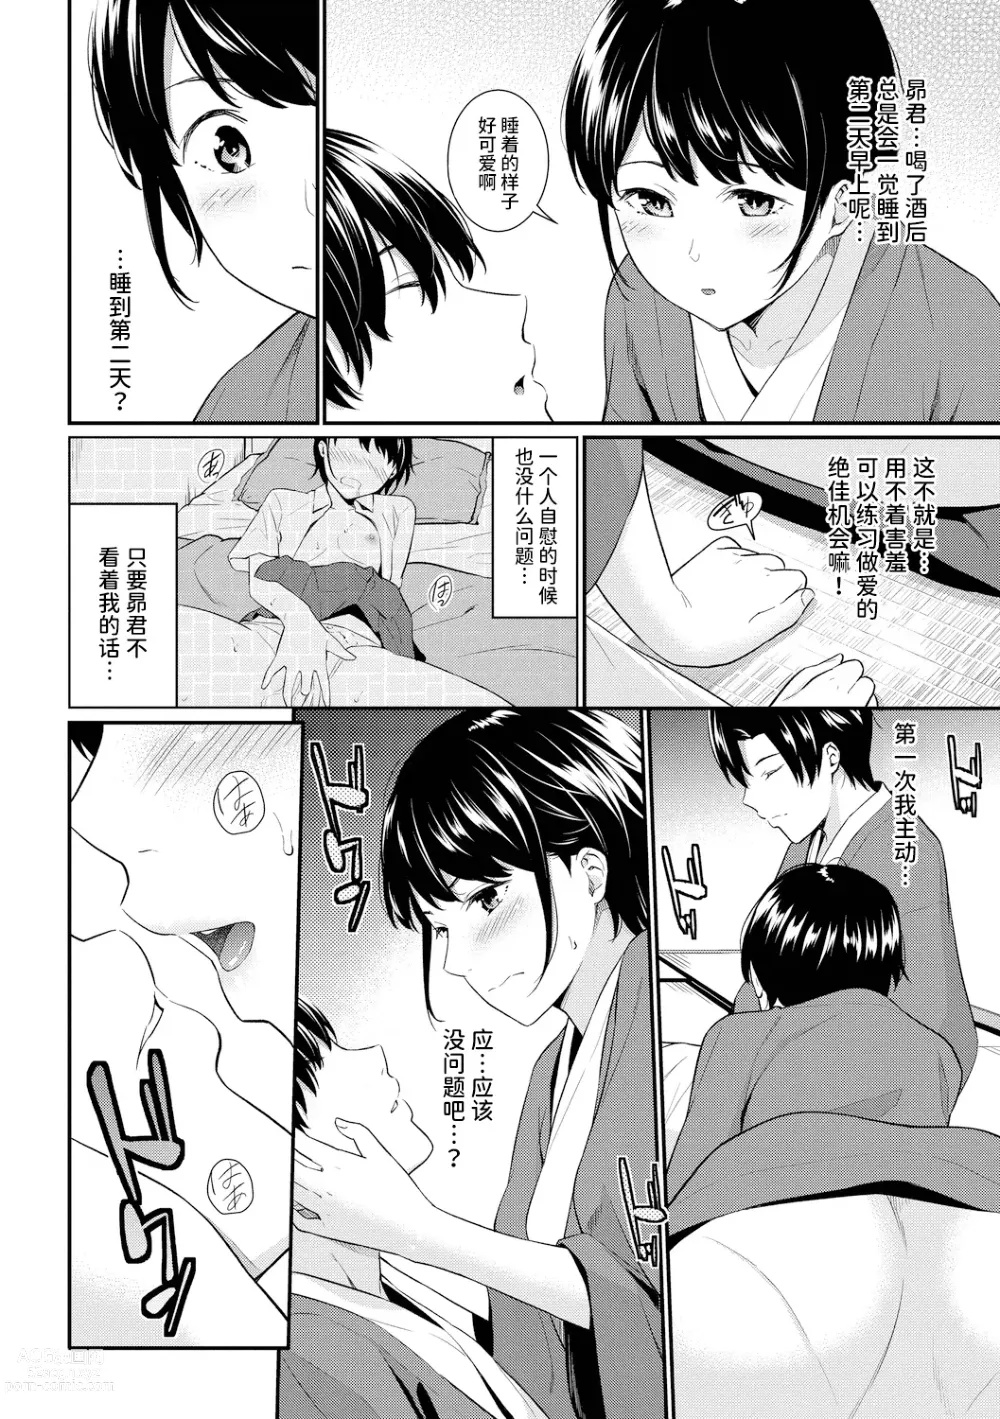 Page 7 of manga シャイミートリップ+続・シャイミートリップ